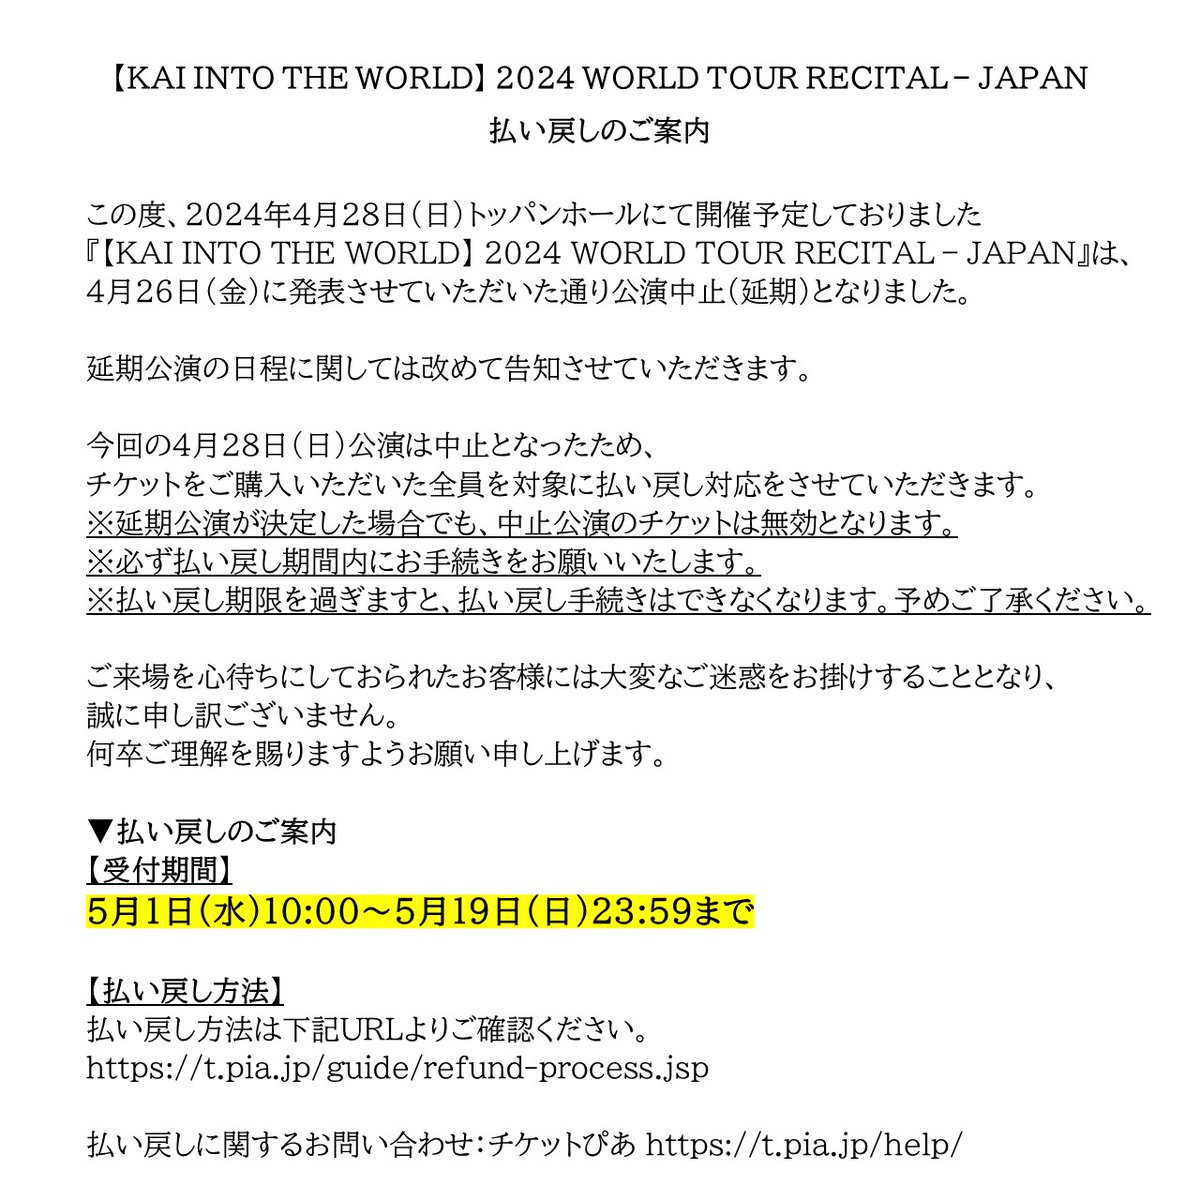 【KAI INTO THE WORLD】 
2024 WORLD TOUR RECITAL – JAPAN
払い戻しのご案内

【受付期間】
5月1日(水)10:00～5月19日(日)23:59まで

【払い戻し方法】
払い戻し方法は下記URLよりご確認ください。
t.pia.jp/guide/refund-p…

払い戻しに関するお問い合わせ：
チケットぴあ t.pia.jp/help/